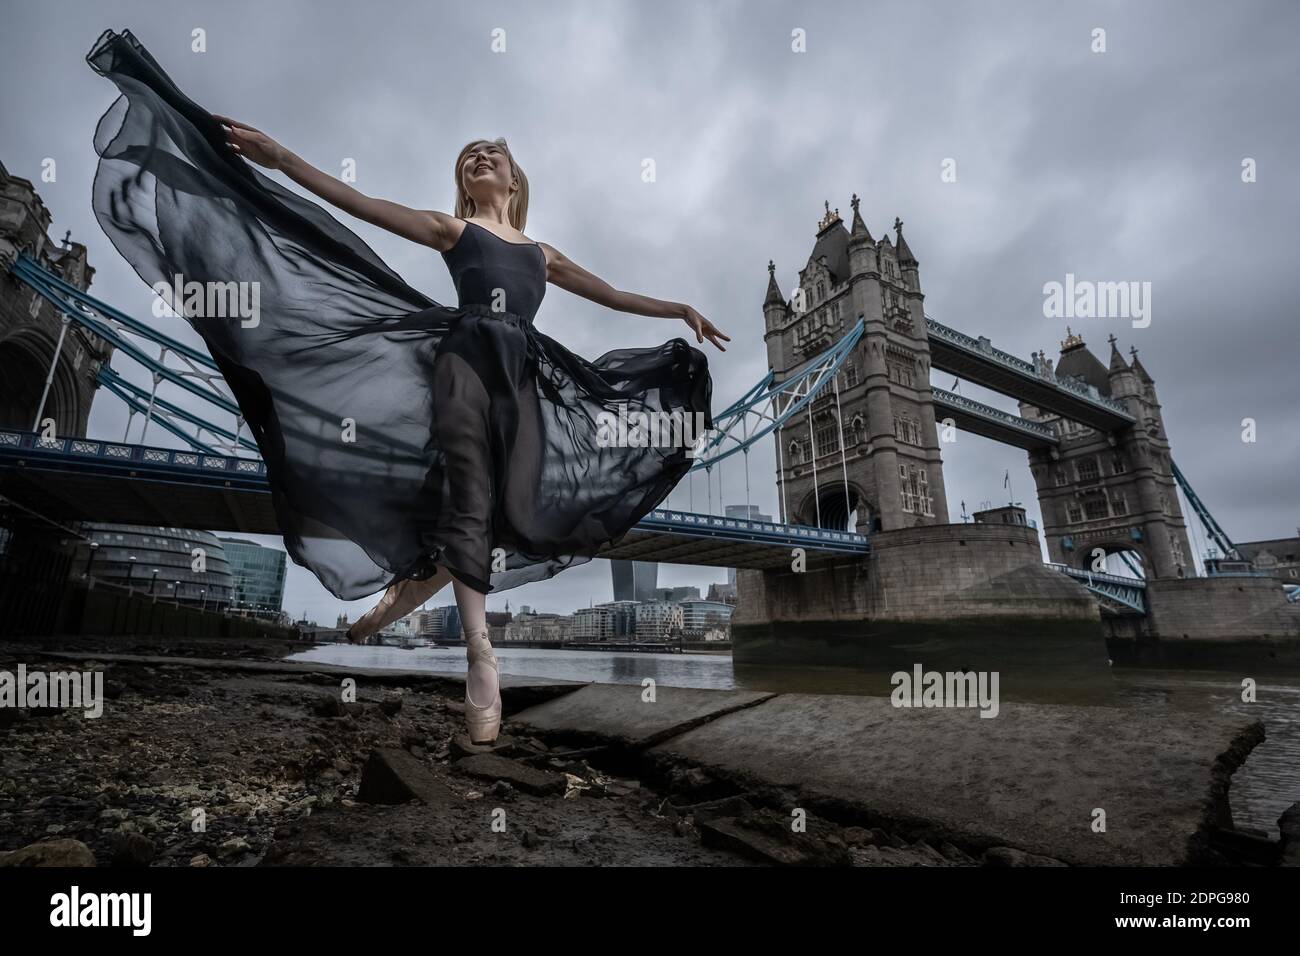 Natsuki Uemura, professeur de danse contemporaine et de ballet indépendant, effectue une danse matinale près de Tower Bridge, Londres, Royaume-Uni. Banque D'Images